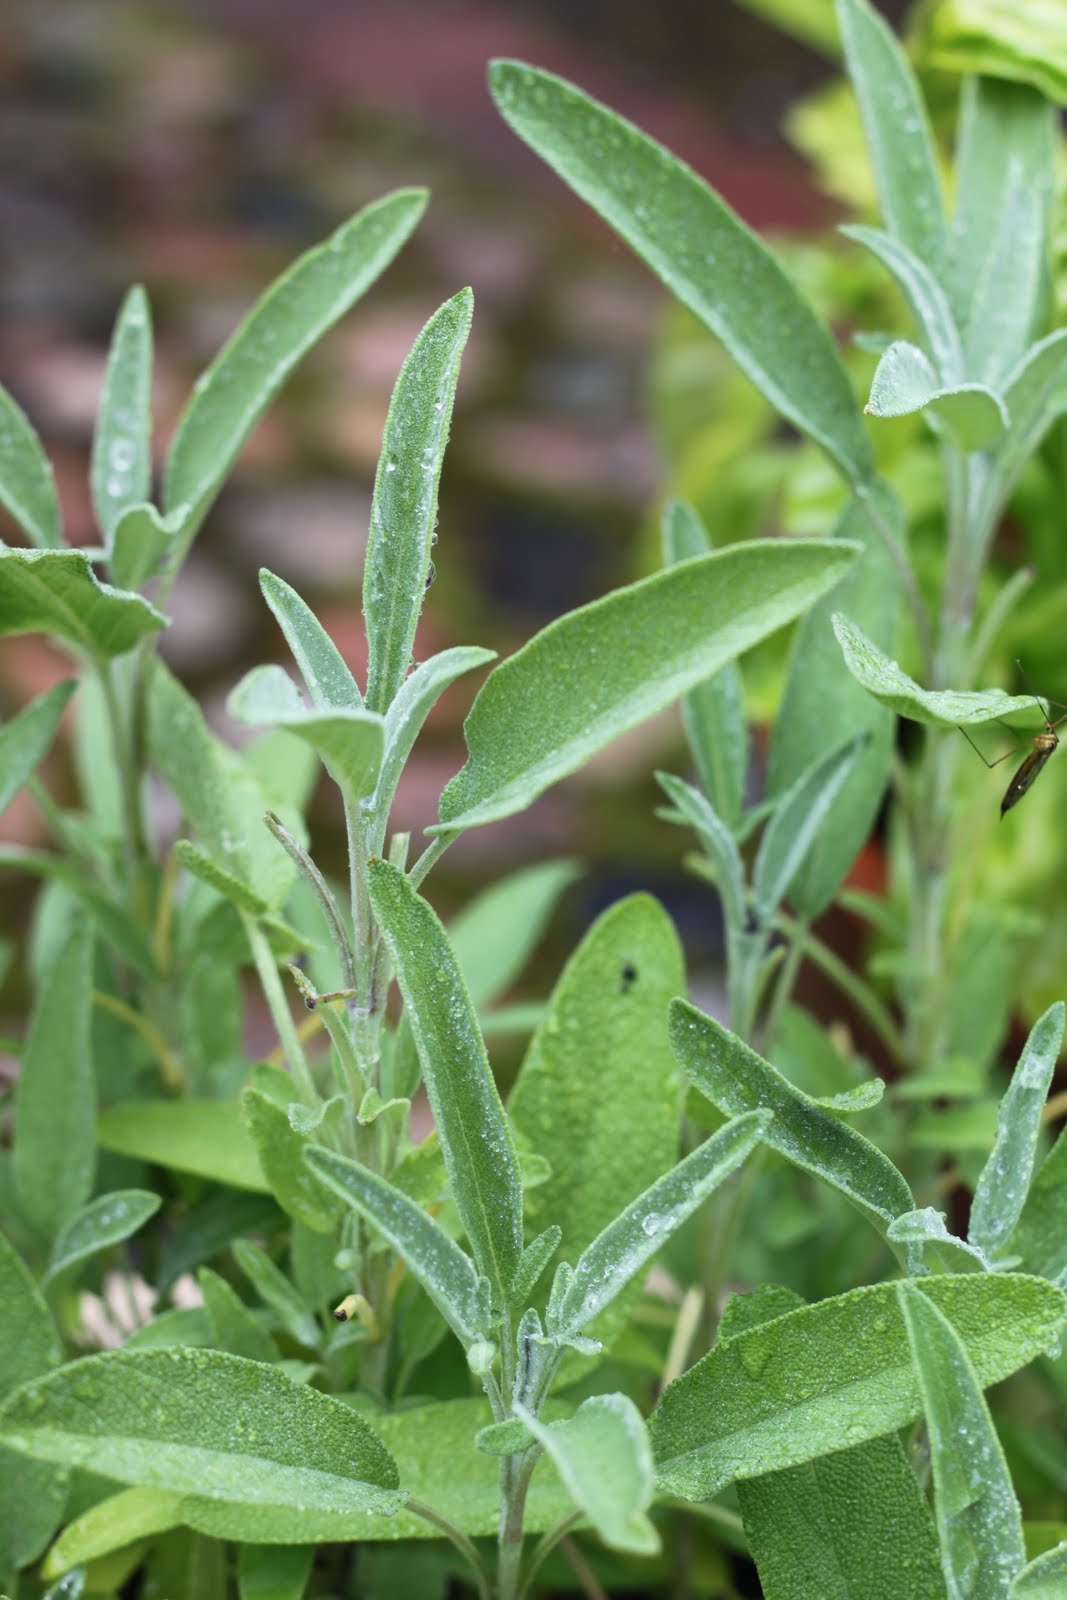 Salviapesto on herkullinen ja monikäyttöinen tahna.

Salvian lehdet ovat lempeän vihreät ja hieman pörröisen näköiset.